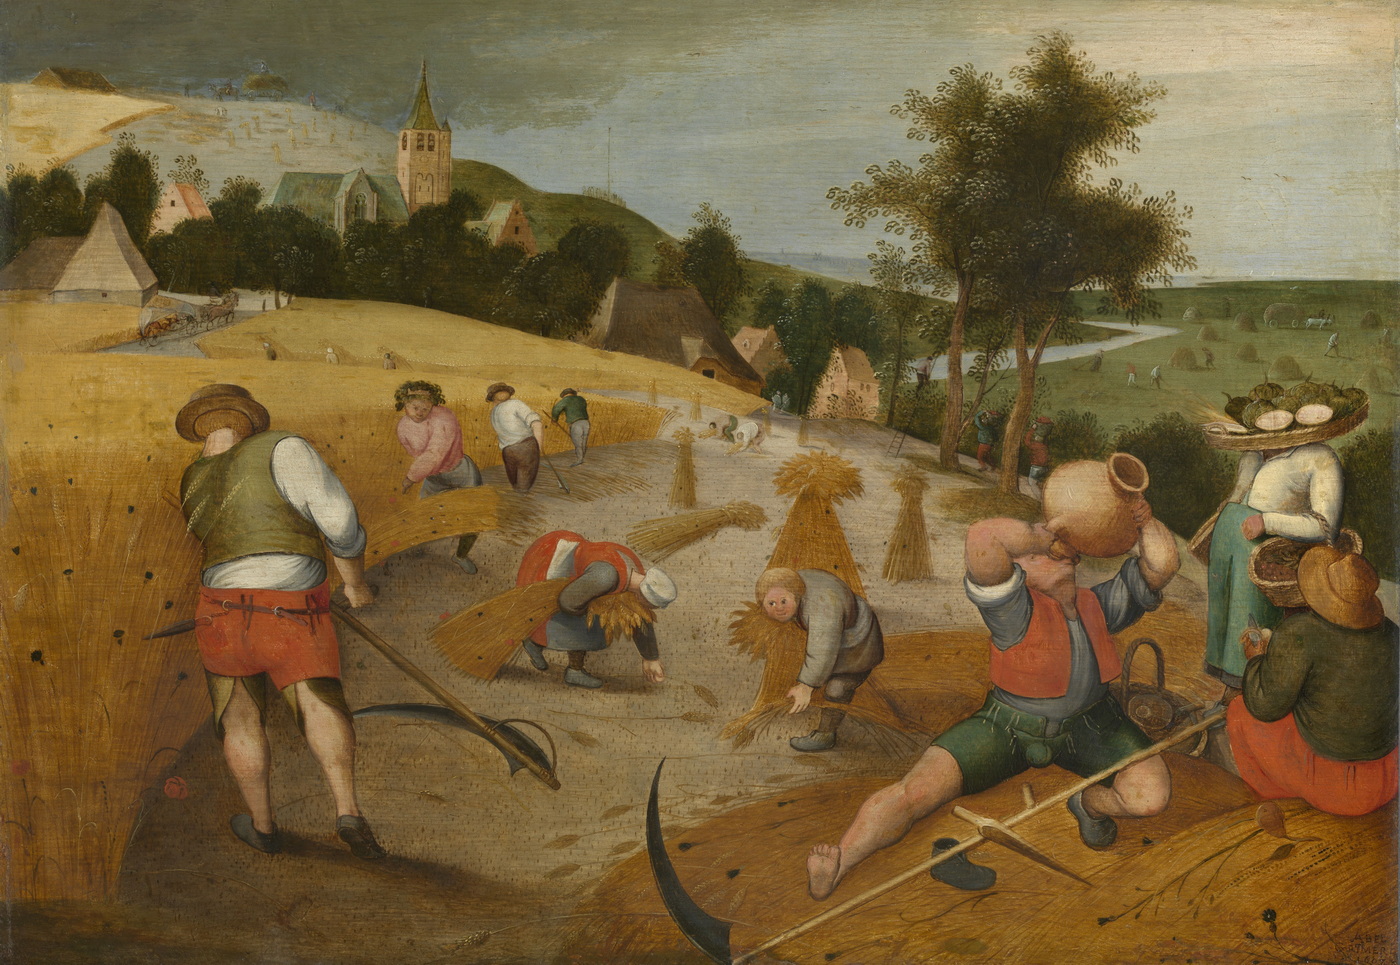 Der Sommer, titel van de serie 'De Vier Seizoenen', een schilderij door Abel Grimmer.Arbeiders aan het werk op het land